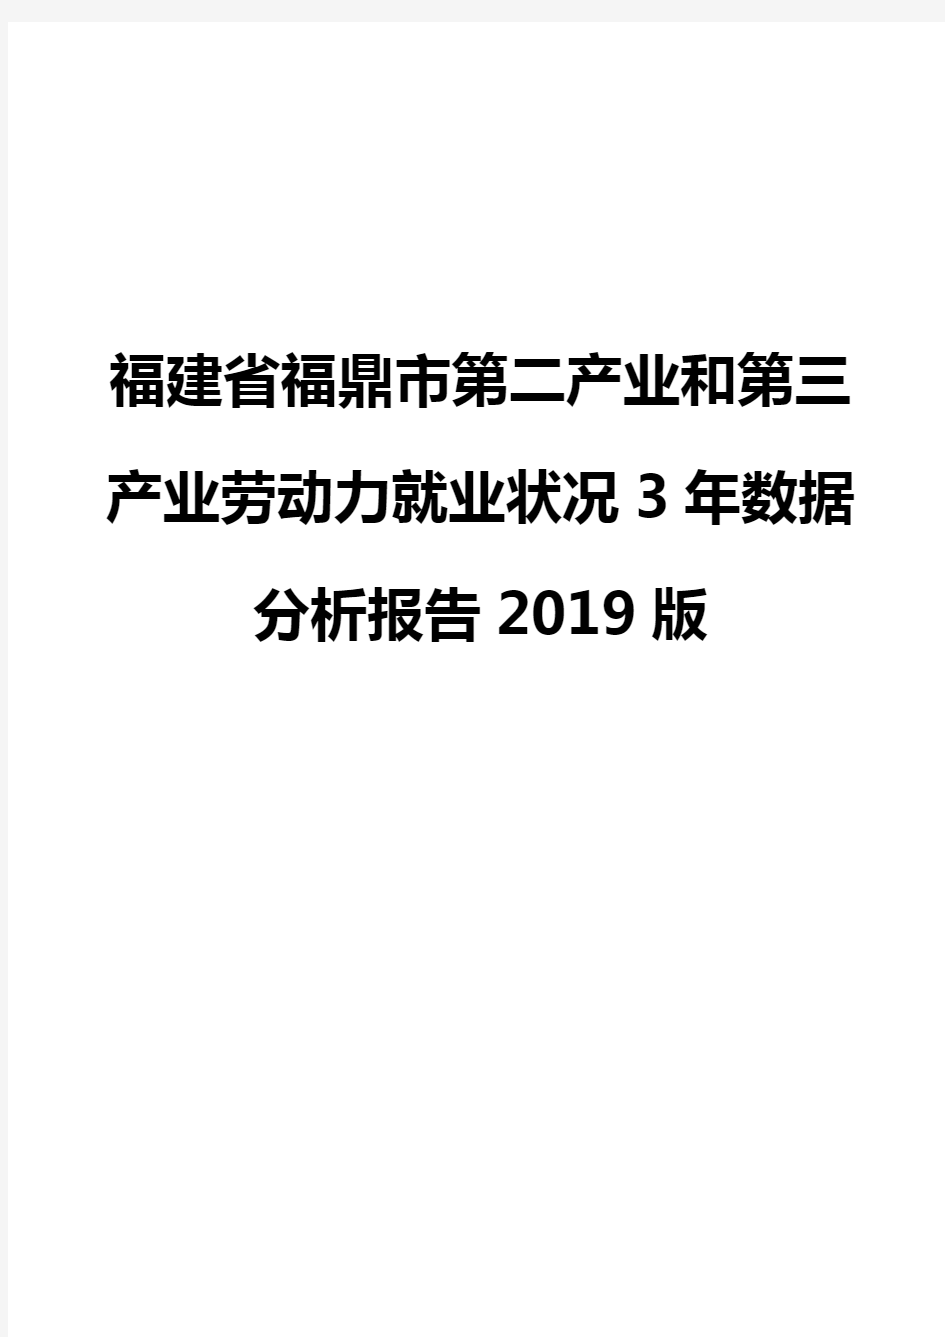 福建省福鼎市第二产业和第三产业劳动力就业状况3年数据分析报告2019版